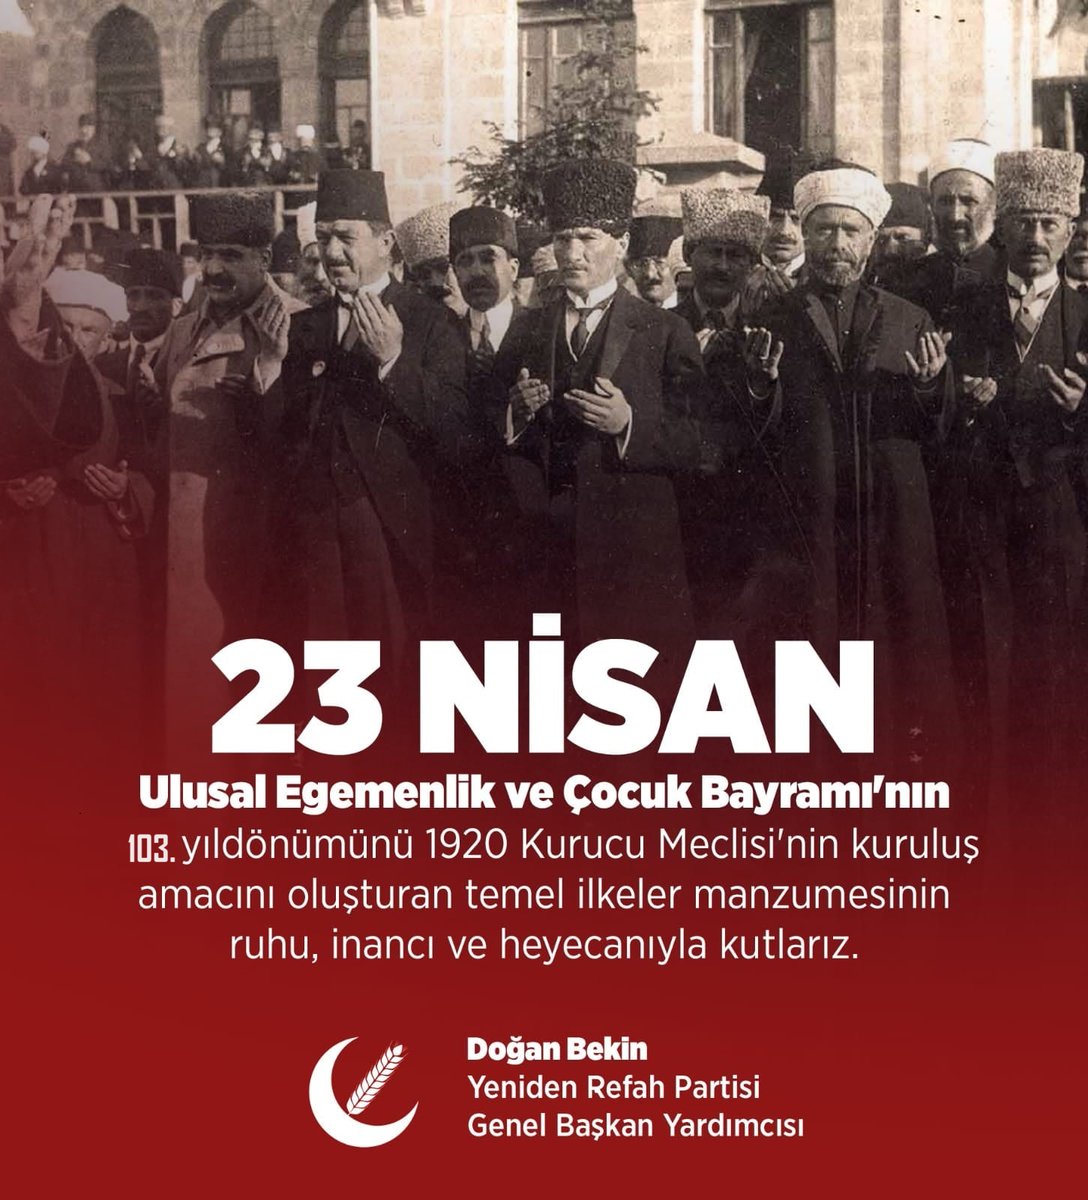 23 Nisan Ulusal Egemenlik ve Çocuk Bayramının 103. yıldönümünü 1920 Kurucu Meclisi'nin kuruluş amacını oluşturan temel ilkeler manzumesinin ruhu, heyecanı ve inancıyla kutlarız. Doğan Bekin Yeniden Refah Partisi Genel Başkan Yardımcısı İstanbul Milletvekili